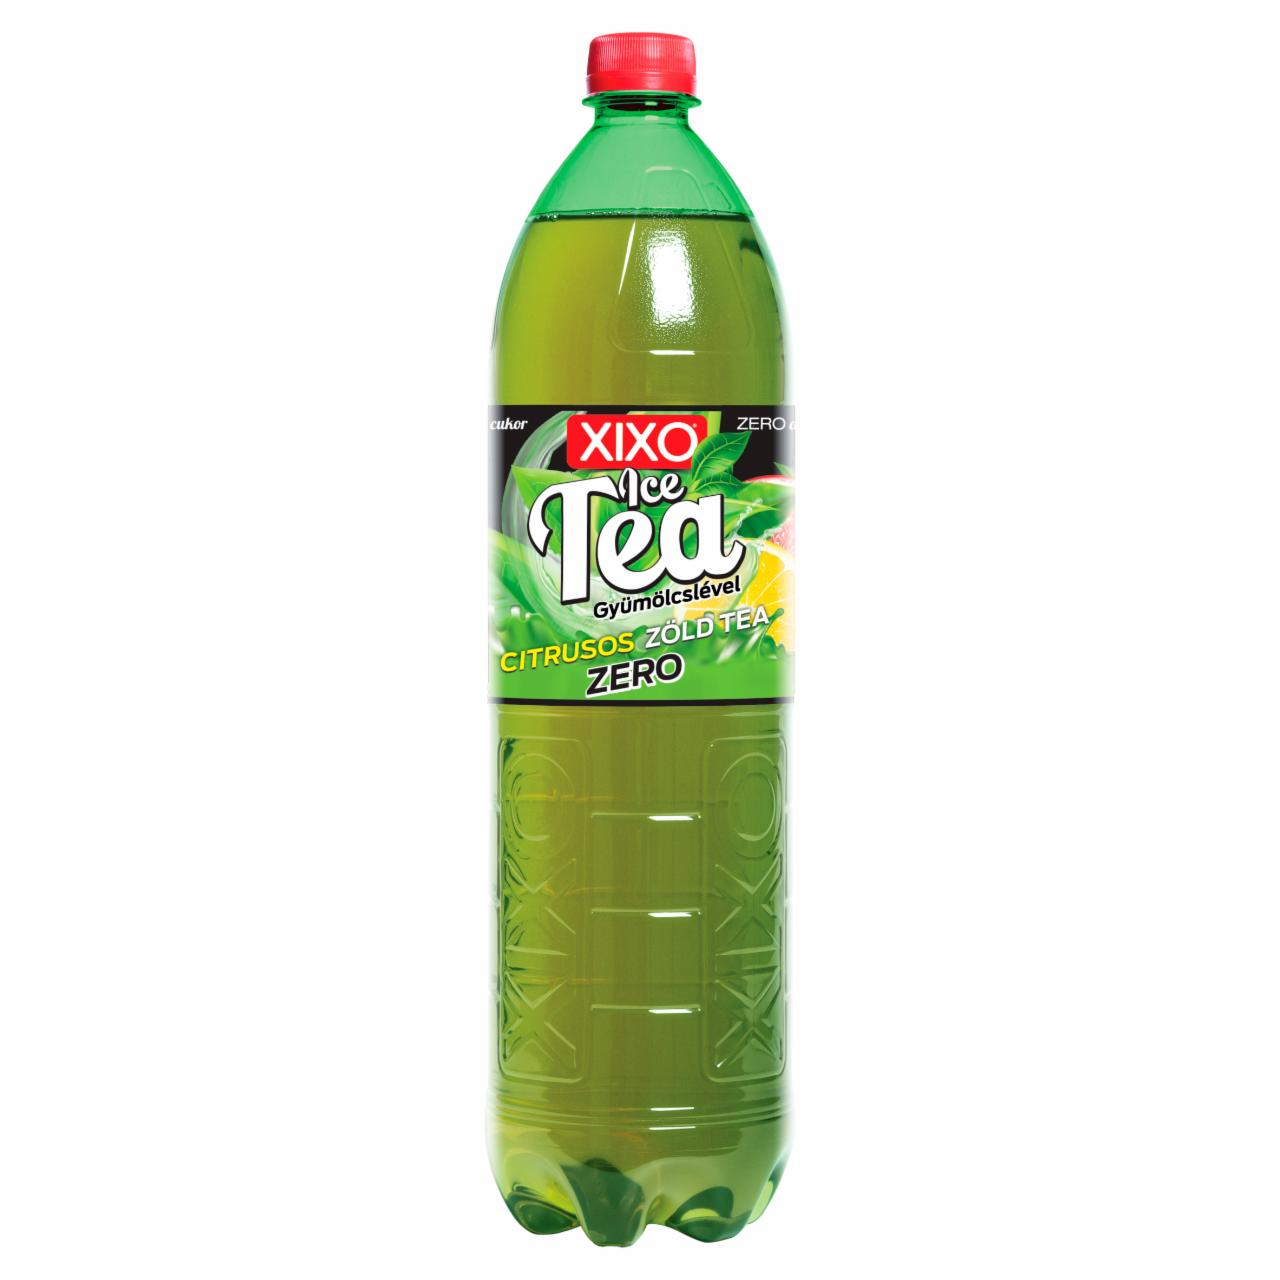 Képek - XIXO Ice Tea Zero citrusos ízű zöld tea édesítőszerekkel 1,5 l